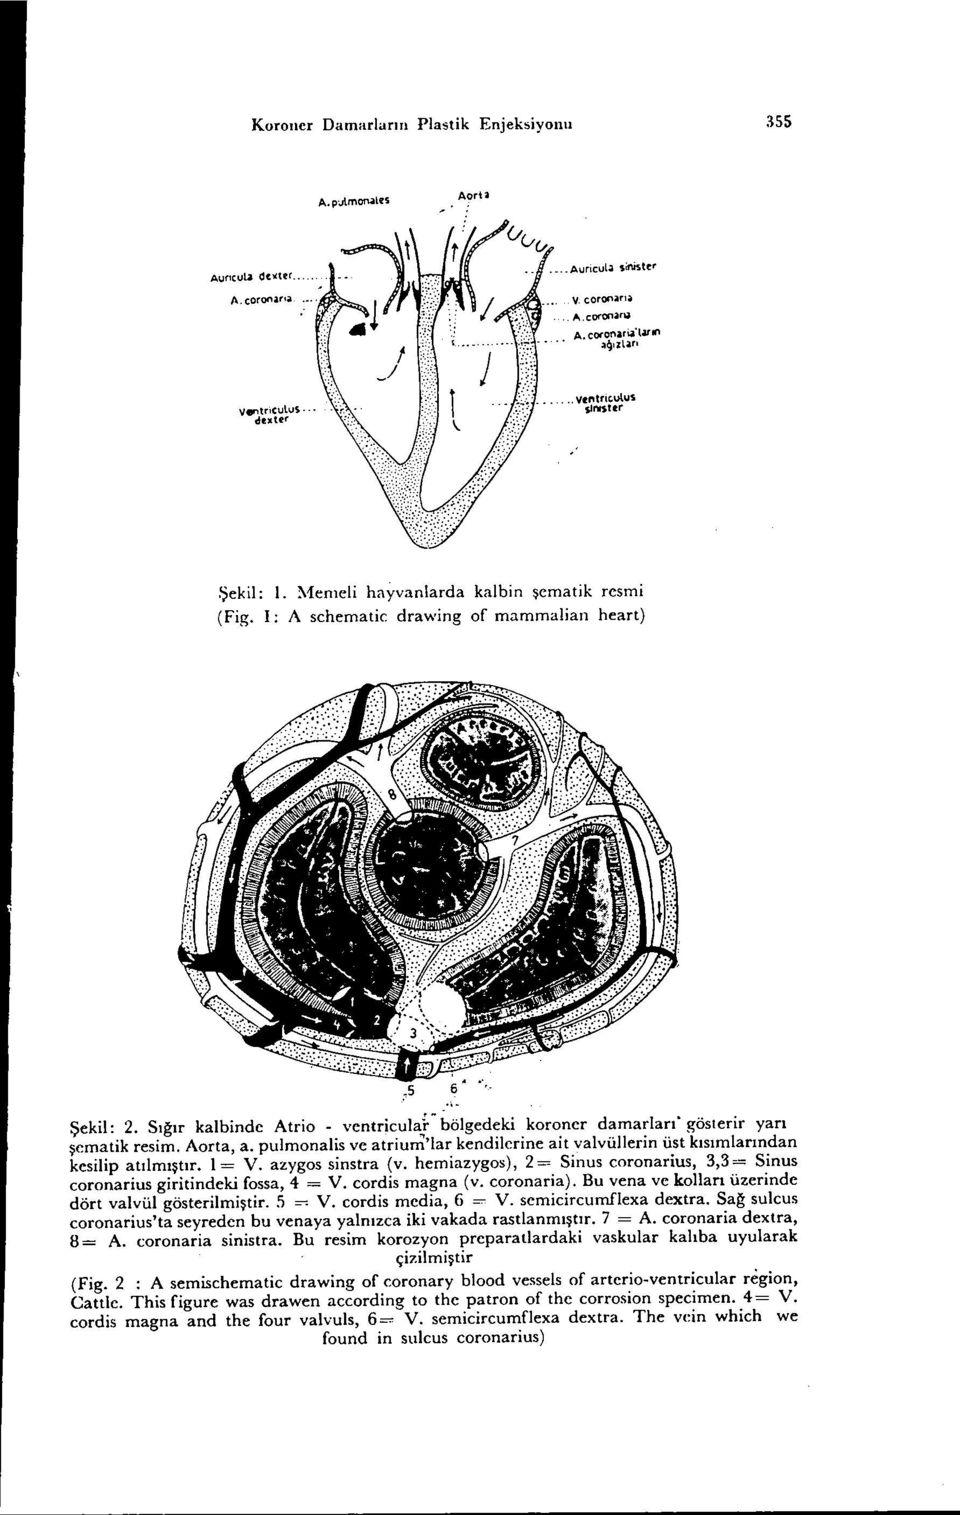 Sığır kalbinde Atrio - ventricula~-bölgedeki koroner damarları. gösterir yarı şematik resim. Aorta, a. pulmonalis ve atrium'lar kendilerine ait valvüllerin üst kısımlarından kesilip atılmıştır. 1= V.